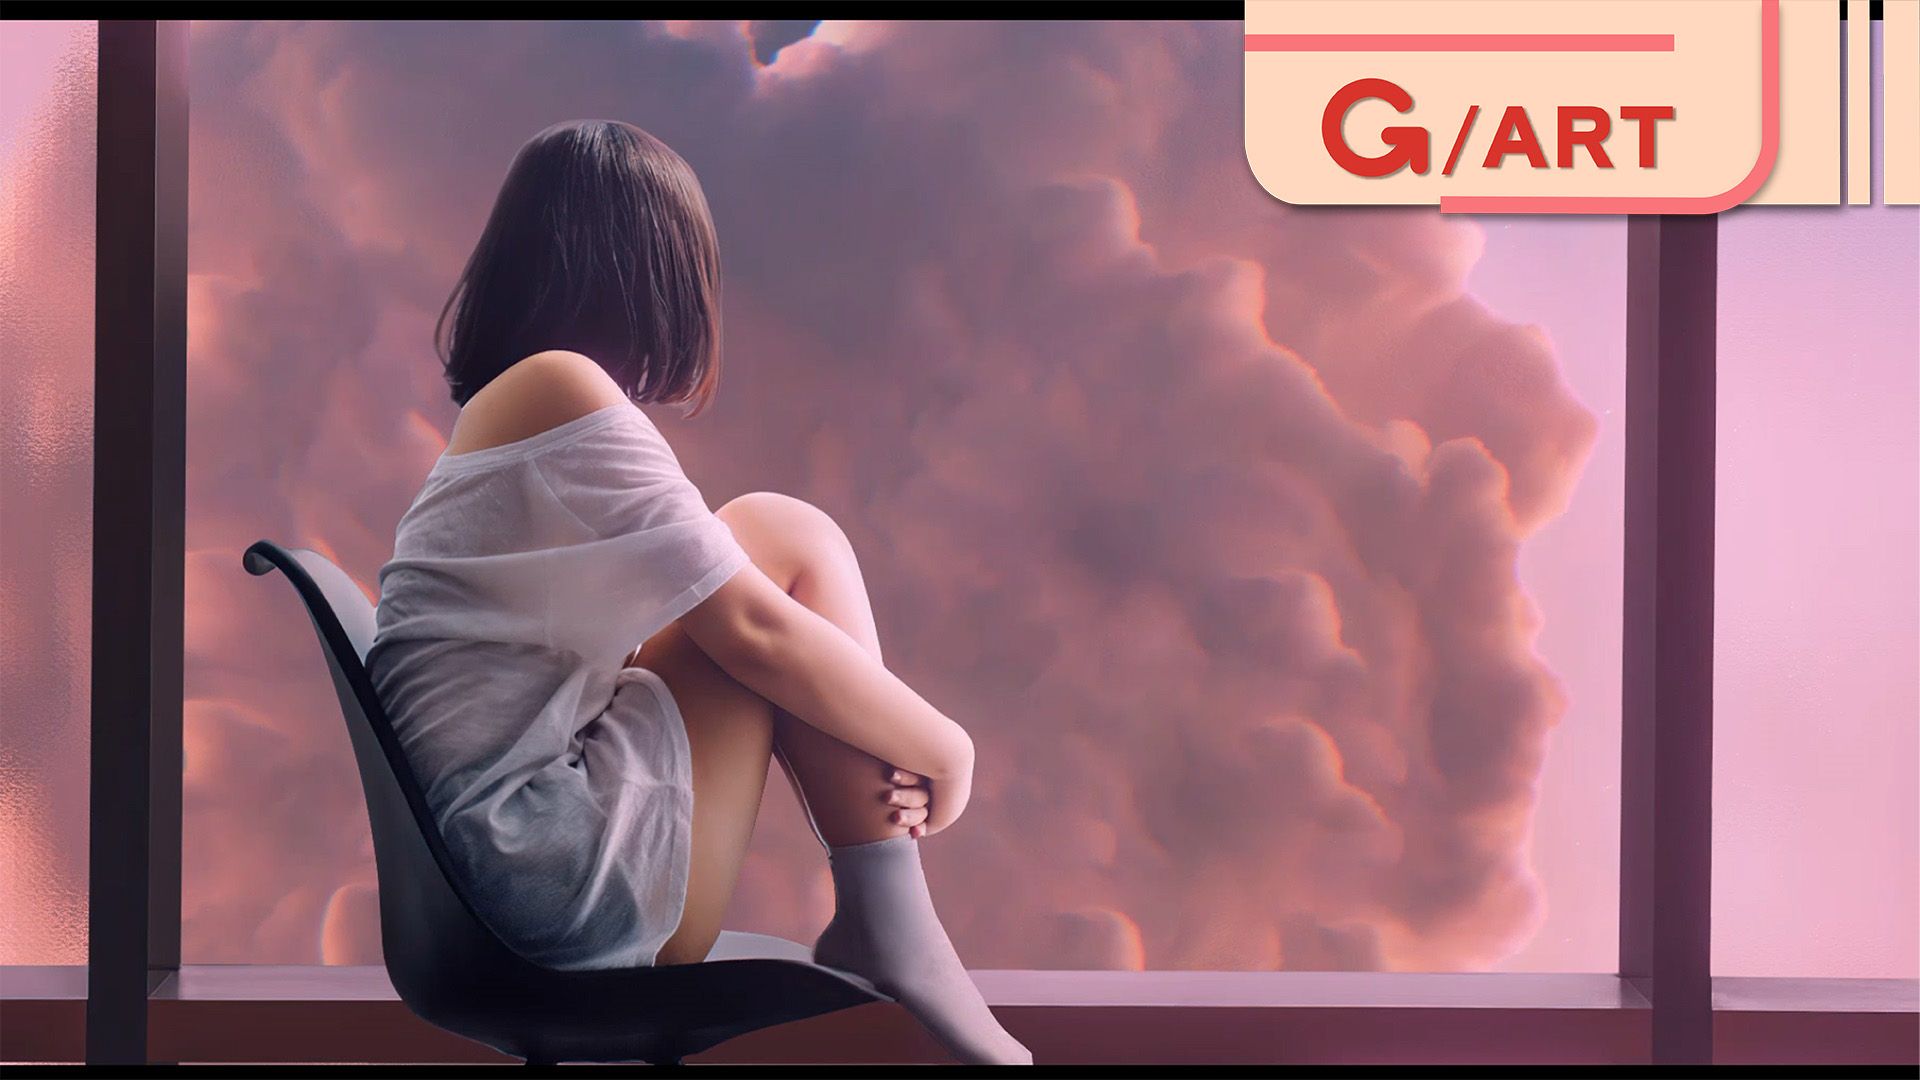 Gearvn - Hình của ad đã làm anh em thất vọng bao giờ chưa 😙? Link dưới cmt  👇 | Facebook